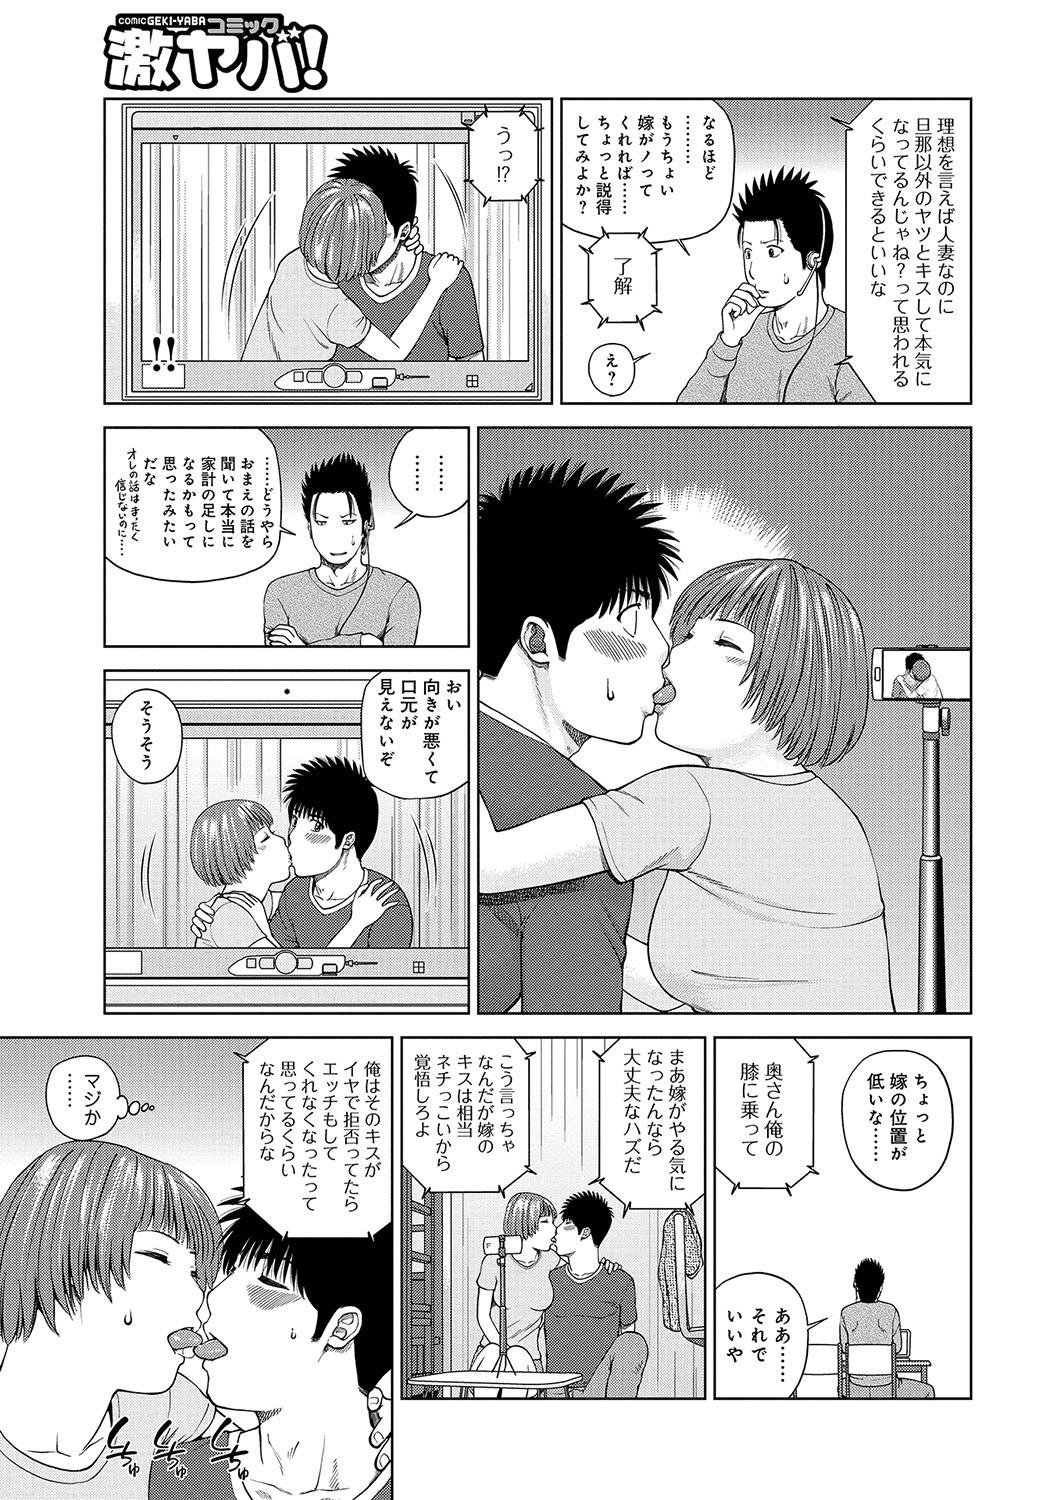 Morocha WEB Ban COMIC Gekiyaba! Vol. 96 Inked - Page 6